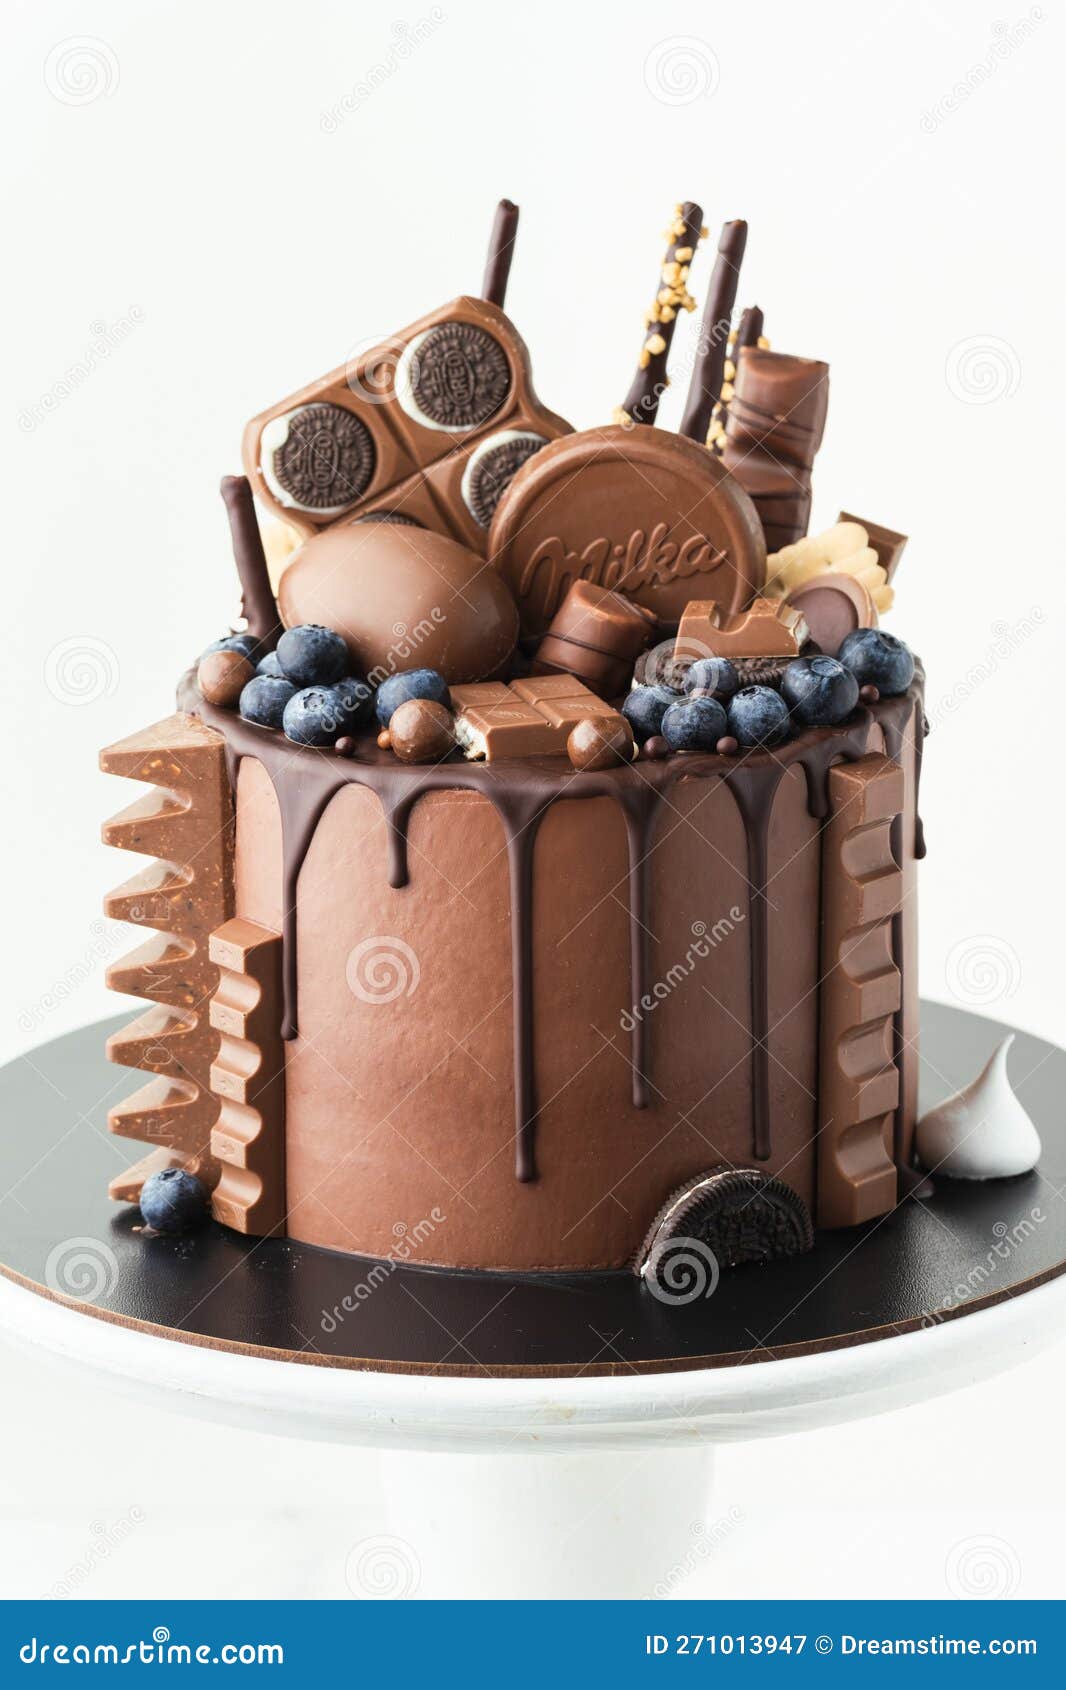 Egg-Shaped Birthday Cake - CakeCentral.com